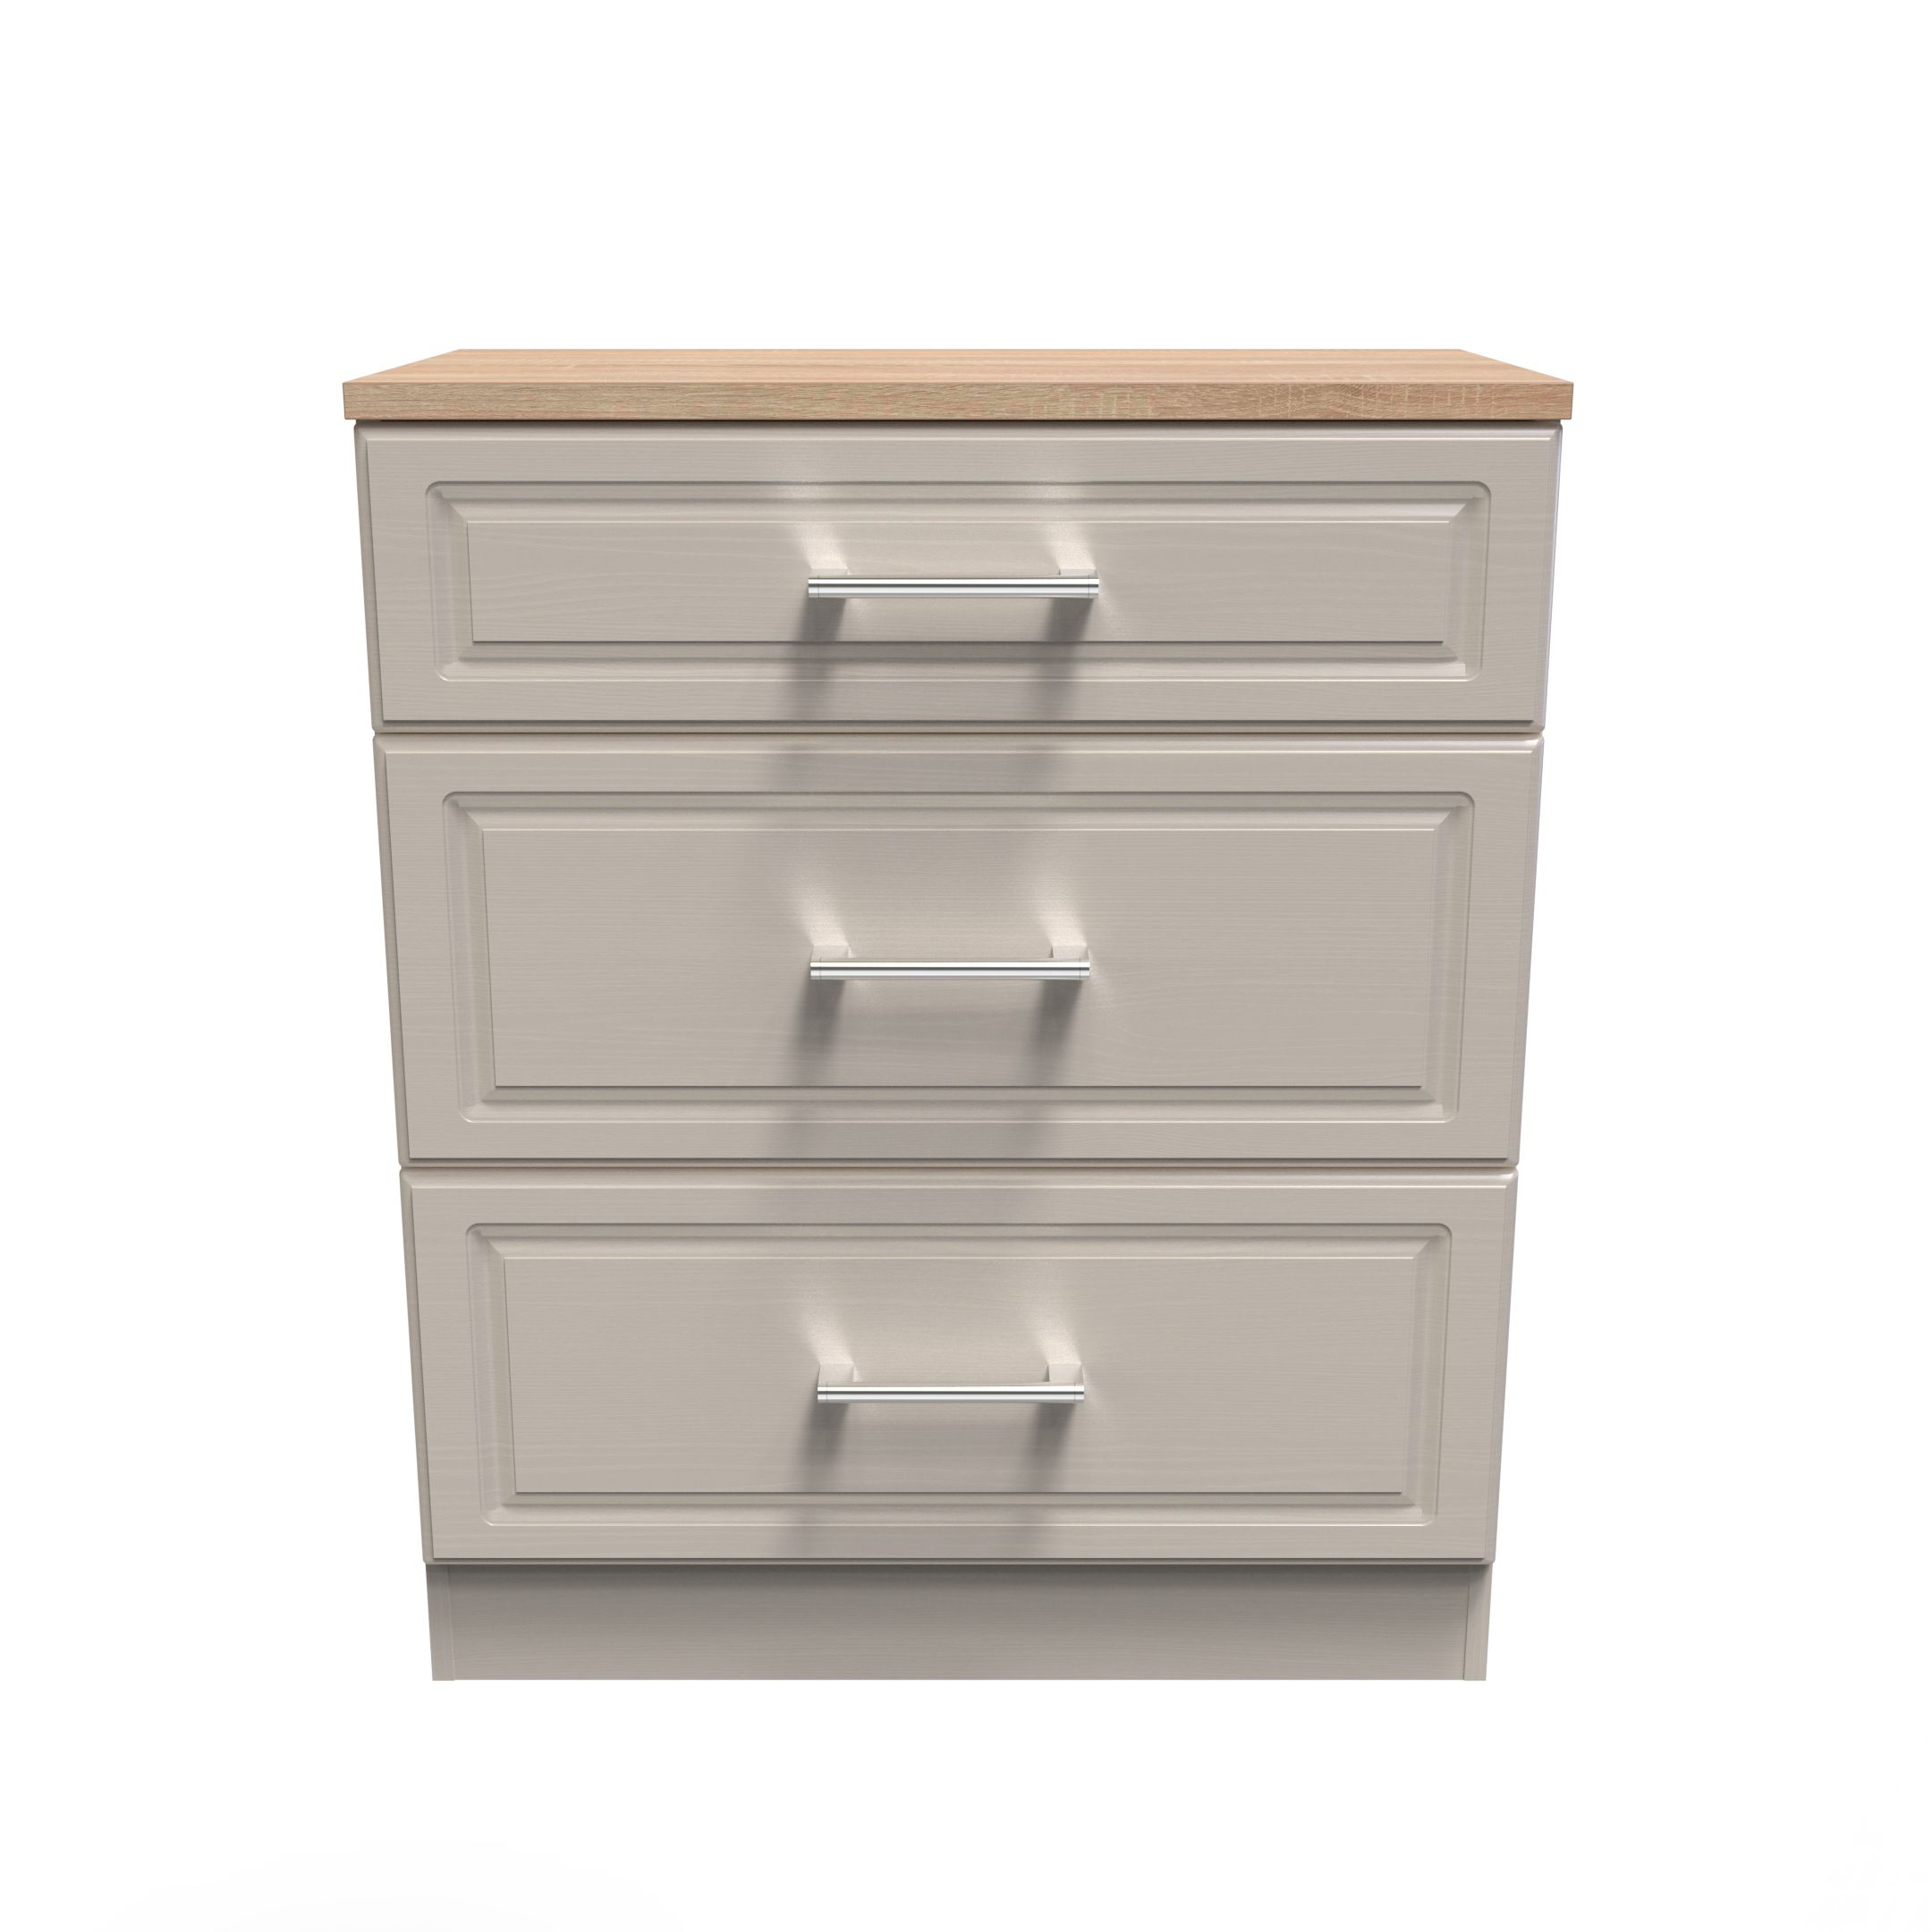 Kent Ready assembled Matt beige light oak effect 3 Drawer Chest of drawers (H)885mm (W)765mm (D)415mm